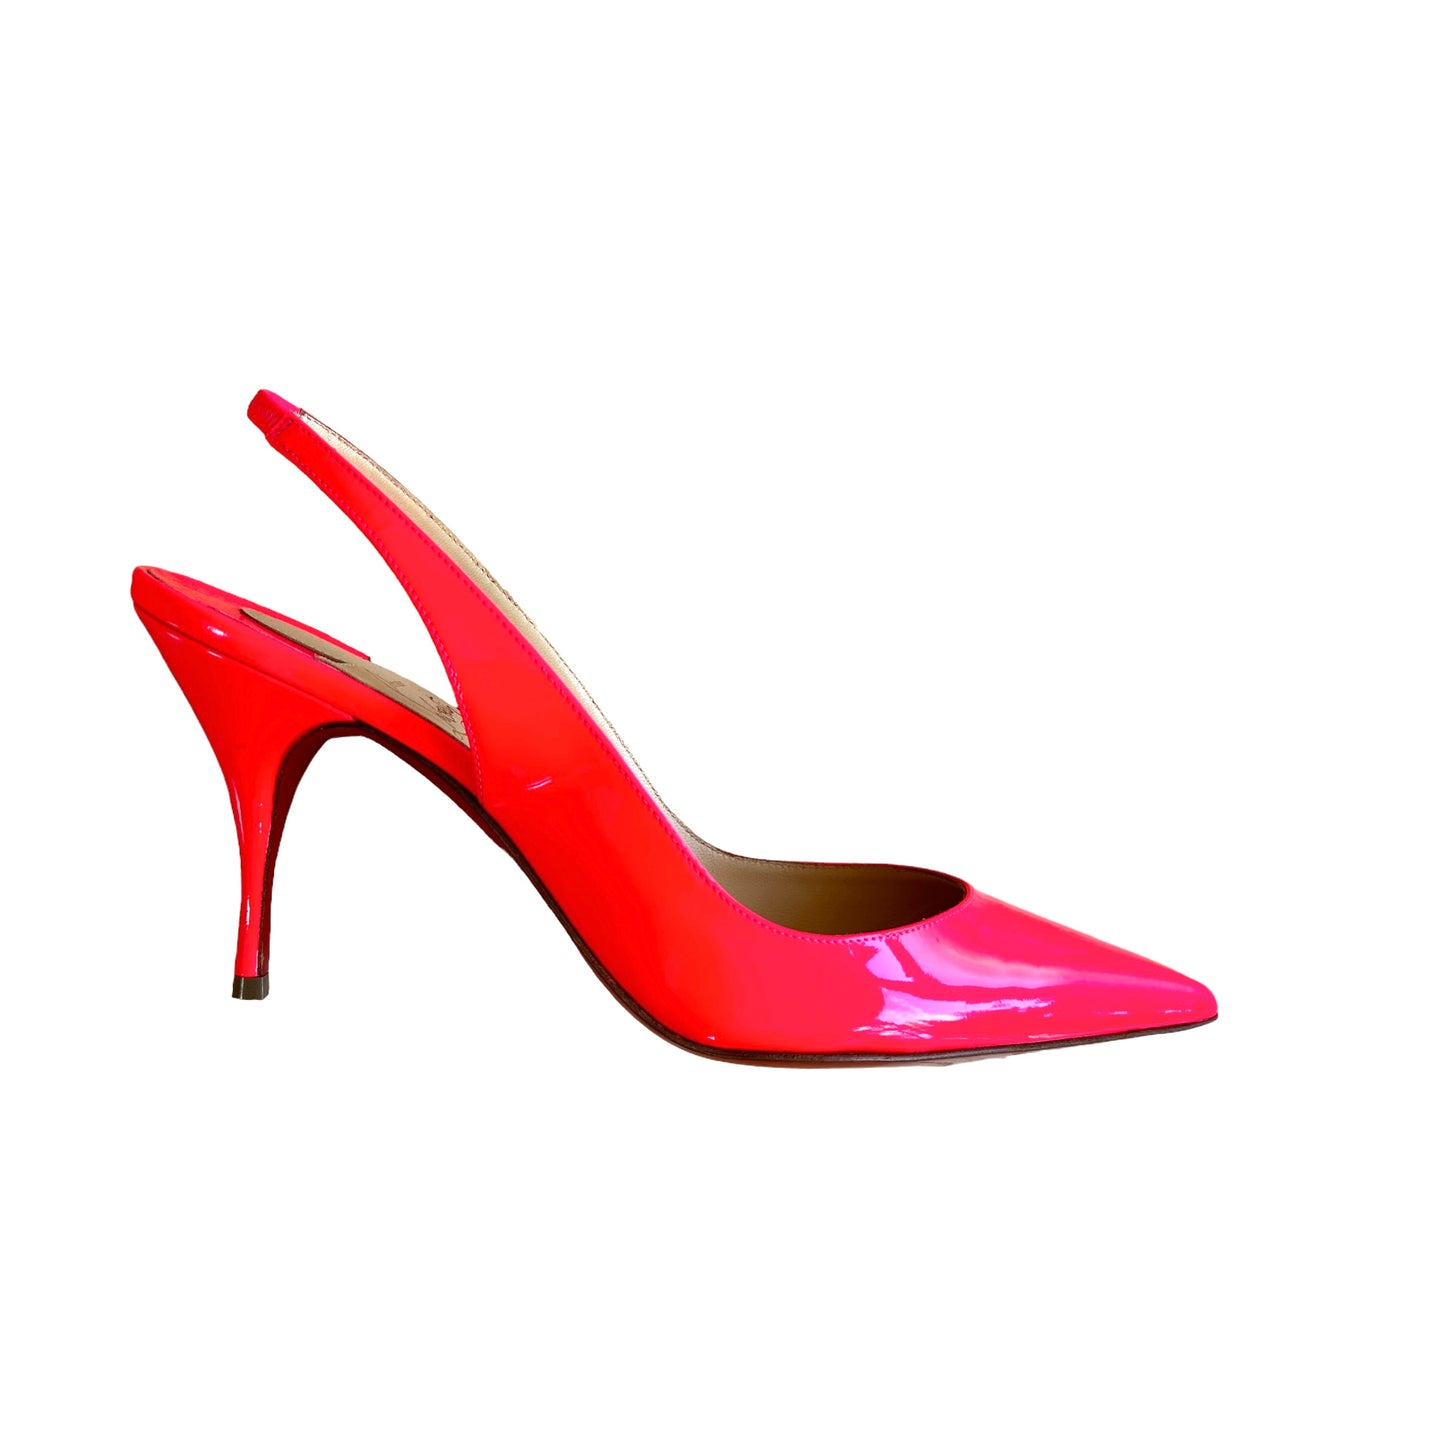 Neon Pink Heels - 8